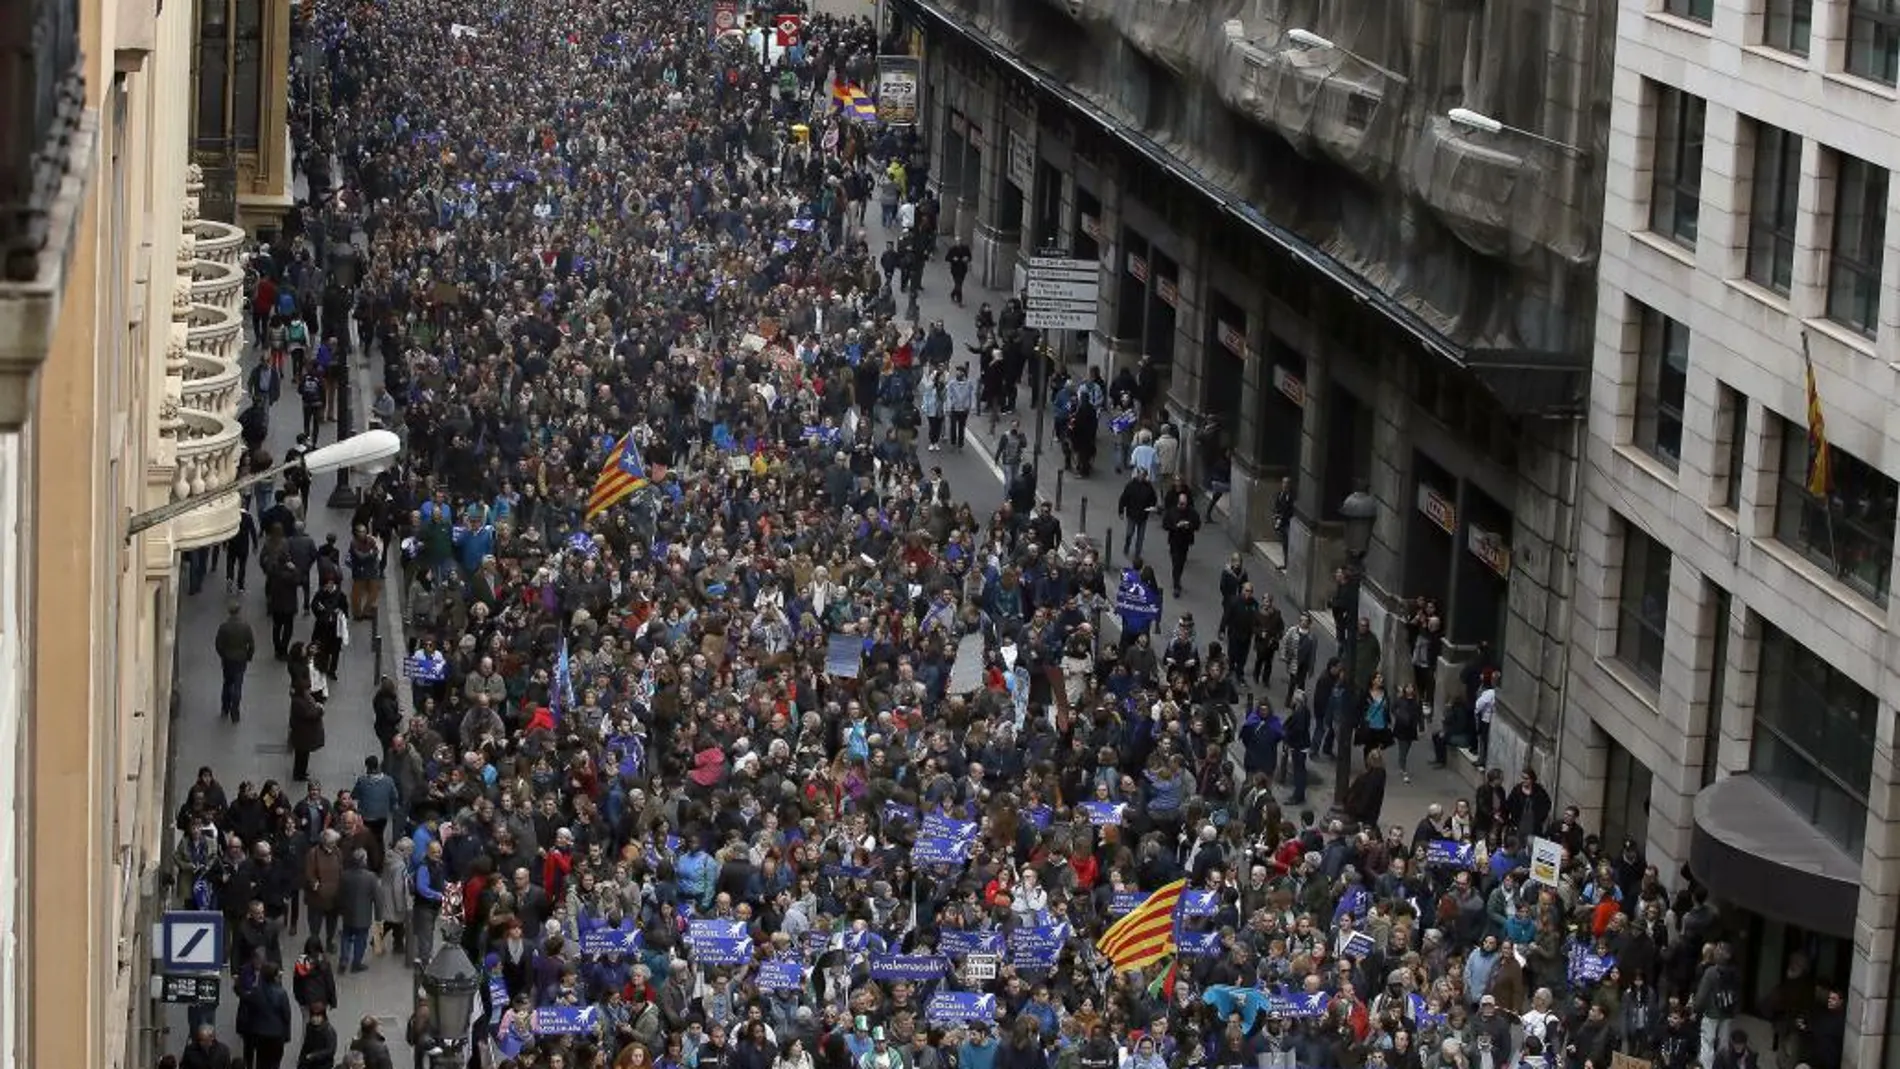 Unas 160.000 personas participan esta tarde en Barcelona en la manifestación organizada con el lema "Volem acollir"(Queremos acoger).